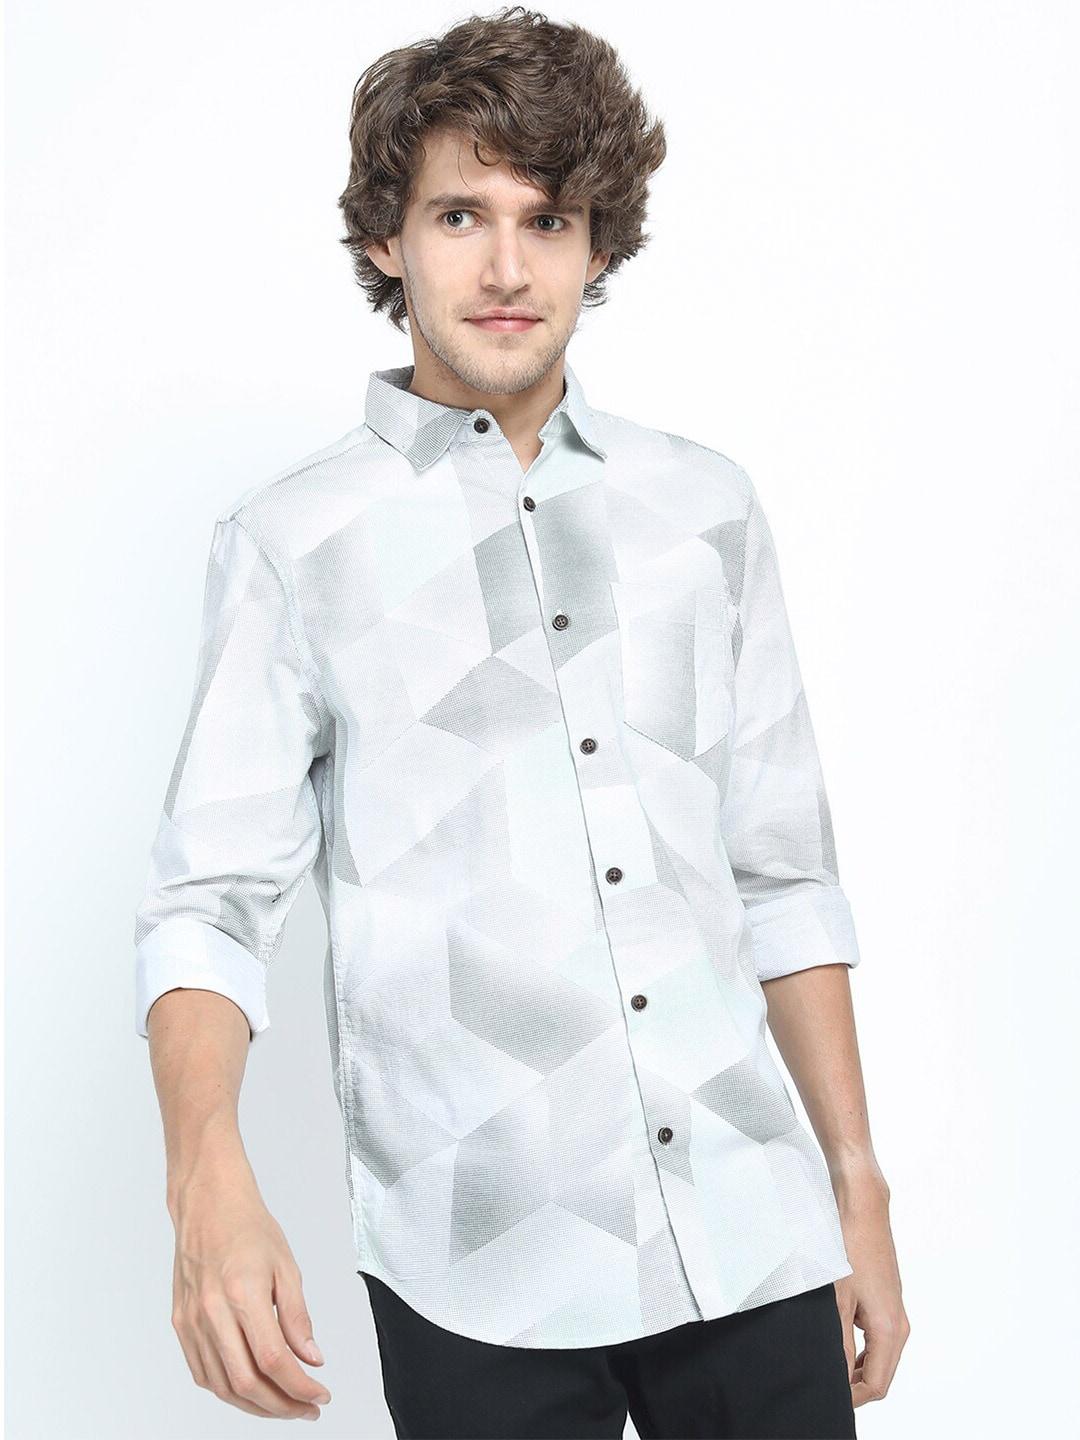 ketch-men-grey-slim-fit-printed-casual-shirt